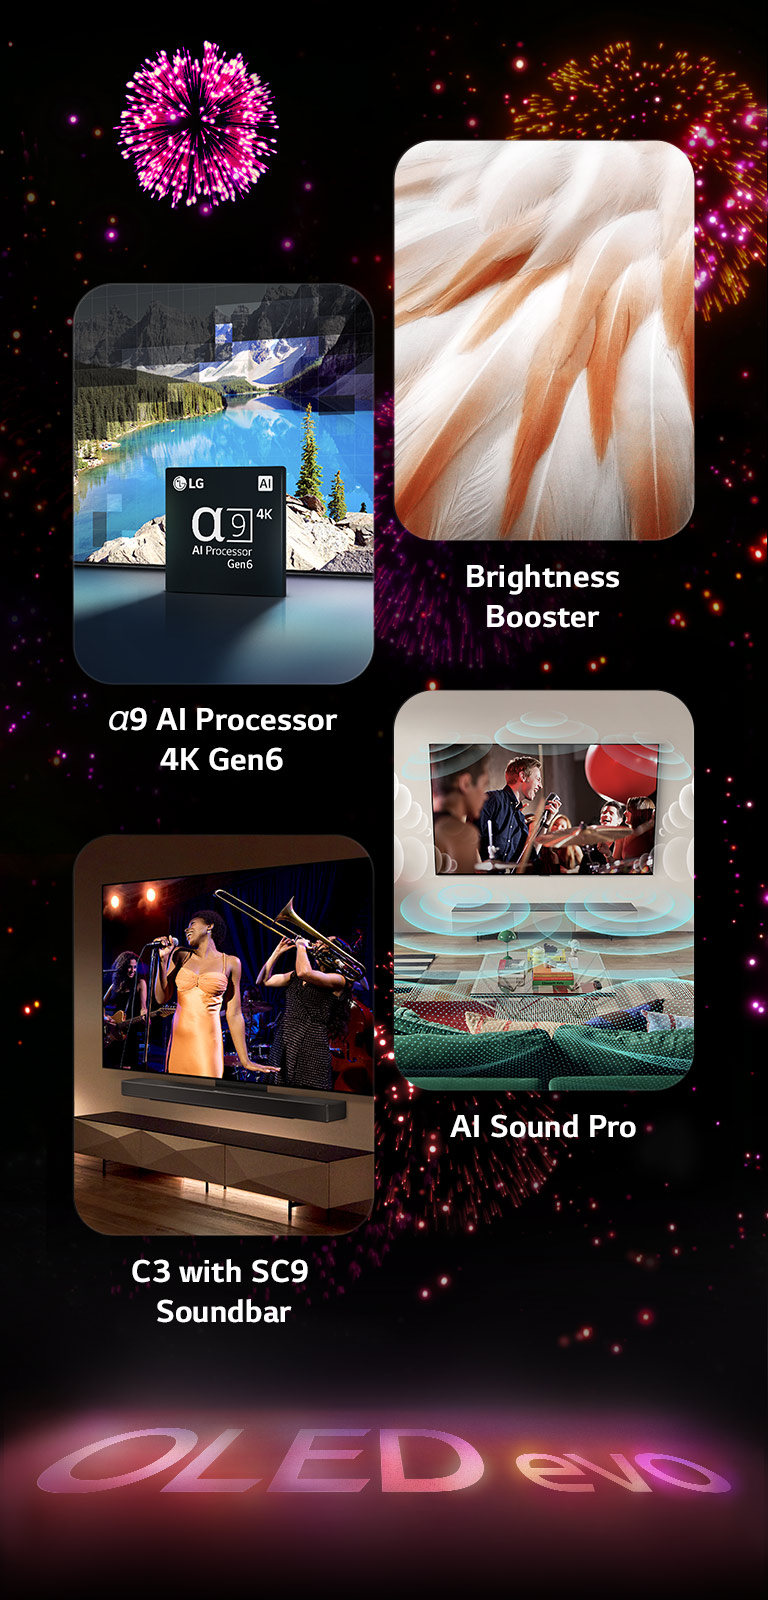 Obrázek představující klíčové vlastnosti LG OLED evo C3 na černém pozadí s růžovým a fialovým ohňostrojem. Růžový odraz od ohňostroje na zemi ukazuje slova "OLED evo." Na obrázku je obrázek znázorňující procesor α9 AI Processor 4K Gen6, který ukazuje čip stojící před obrázkem scény jezera remasterované technologií zpracování. Obrázek představující Brightness Booster Max ukazuje světlé ptačí peří. Obrázek představující Soundbar SC9 ukazuje LG OLED evo C3 a SC9 Soundbar úhledně na zdi s hudebním koncertem přehrávaným na televizoru. Obrázek představující AI Sound Pro ukazuje rockovou show hrající na TV s hudebními bublinami znázorňujícími zvukové vlny zaplňující obytný prostor.